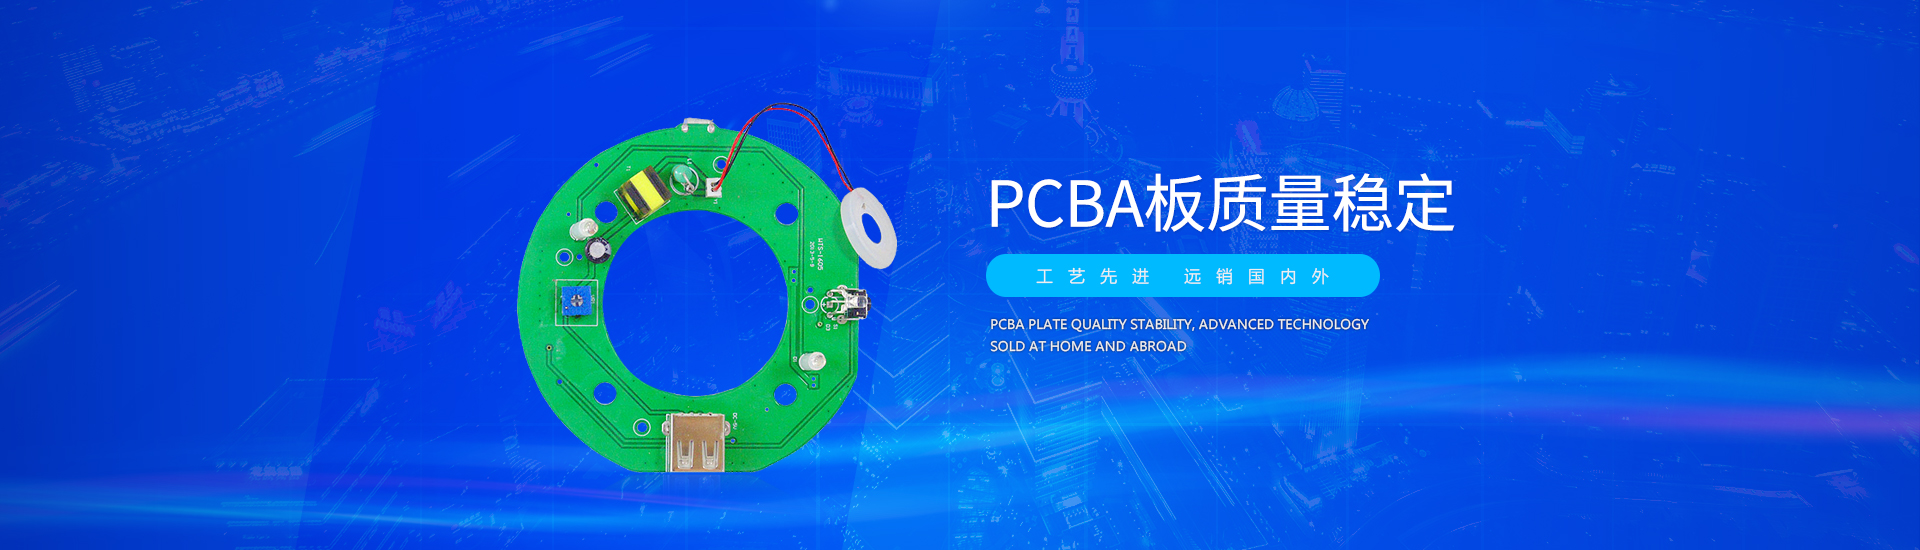 PCBA板定制